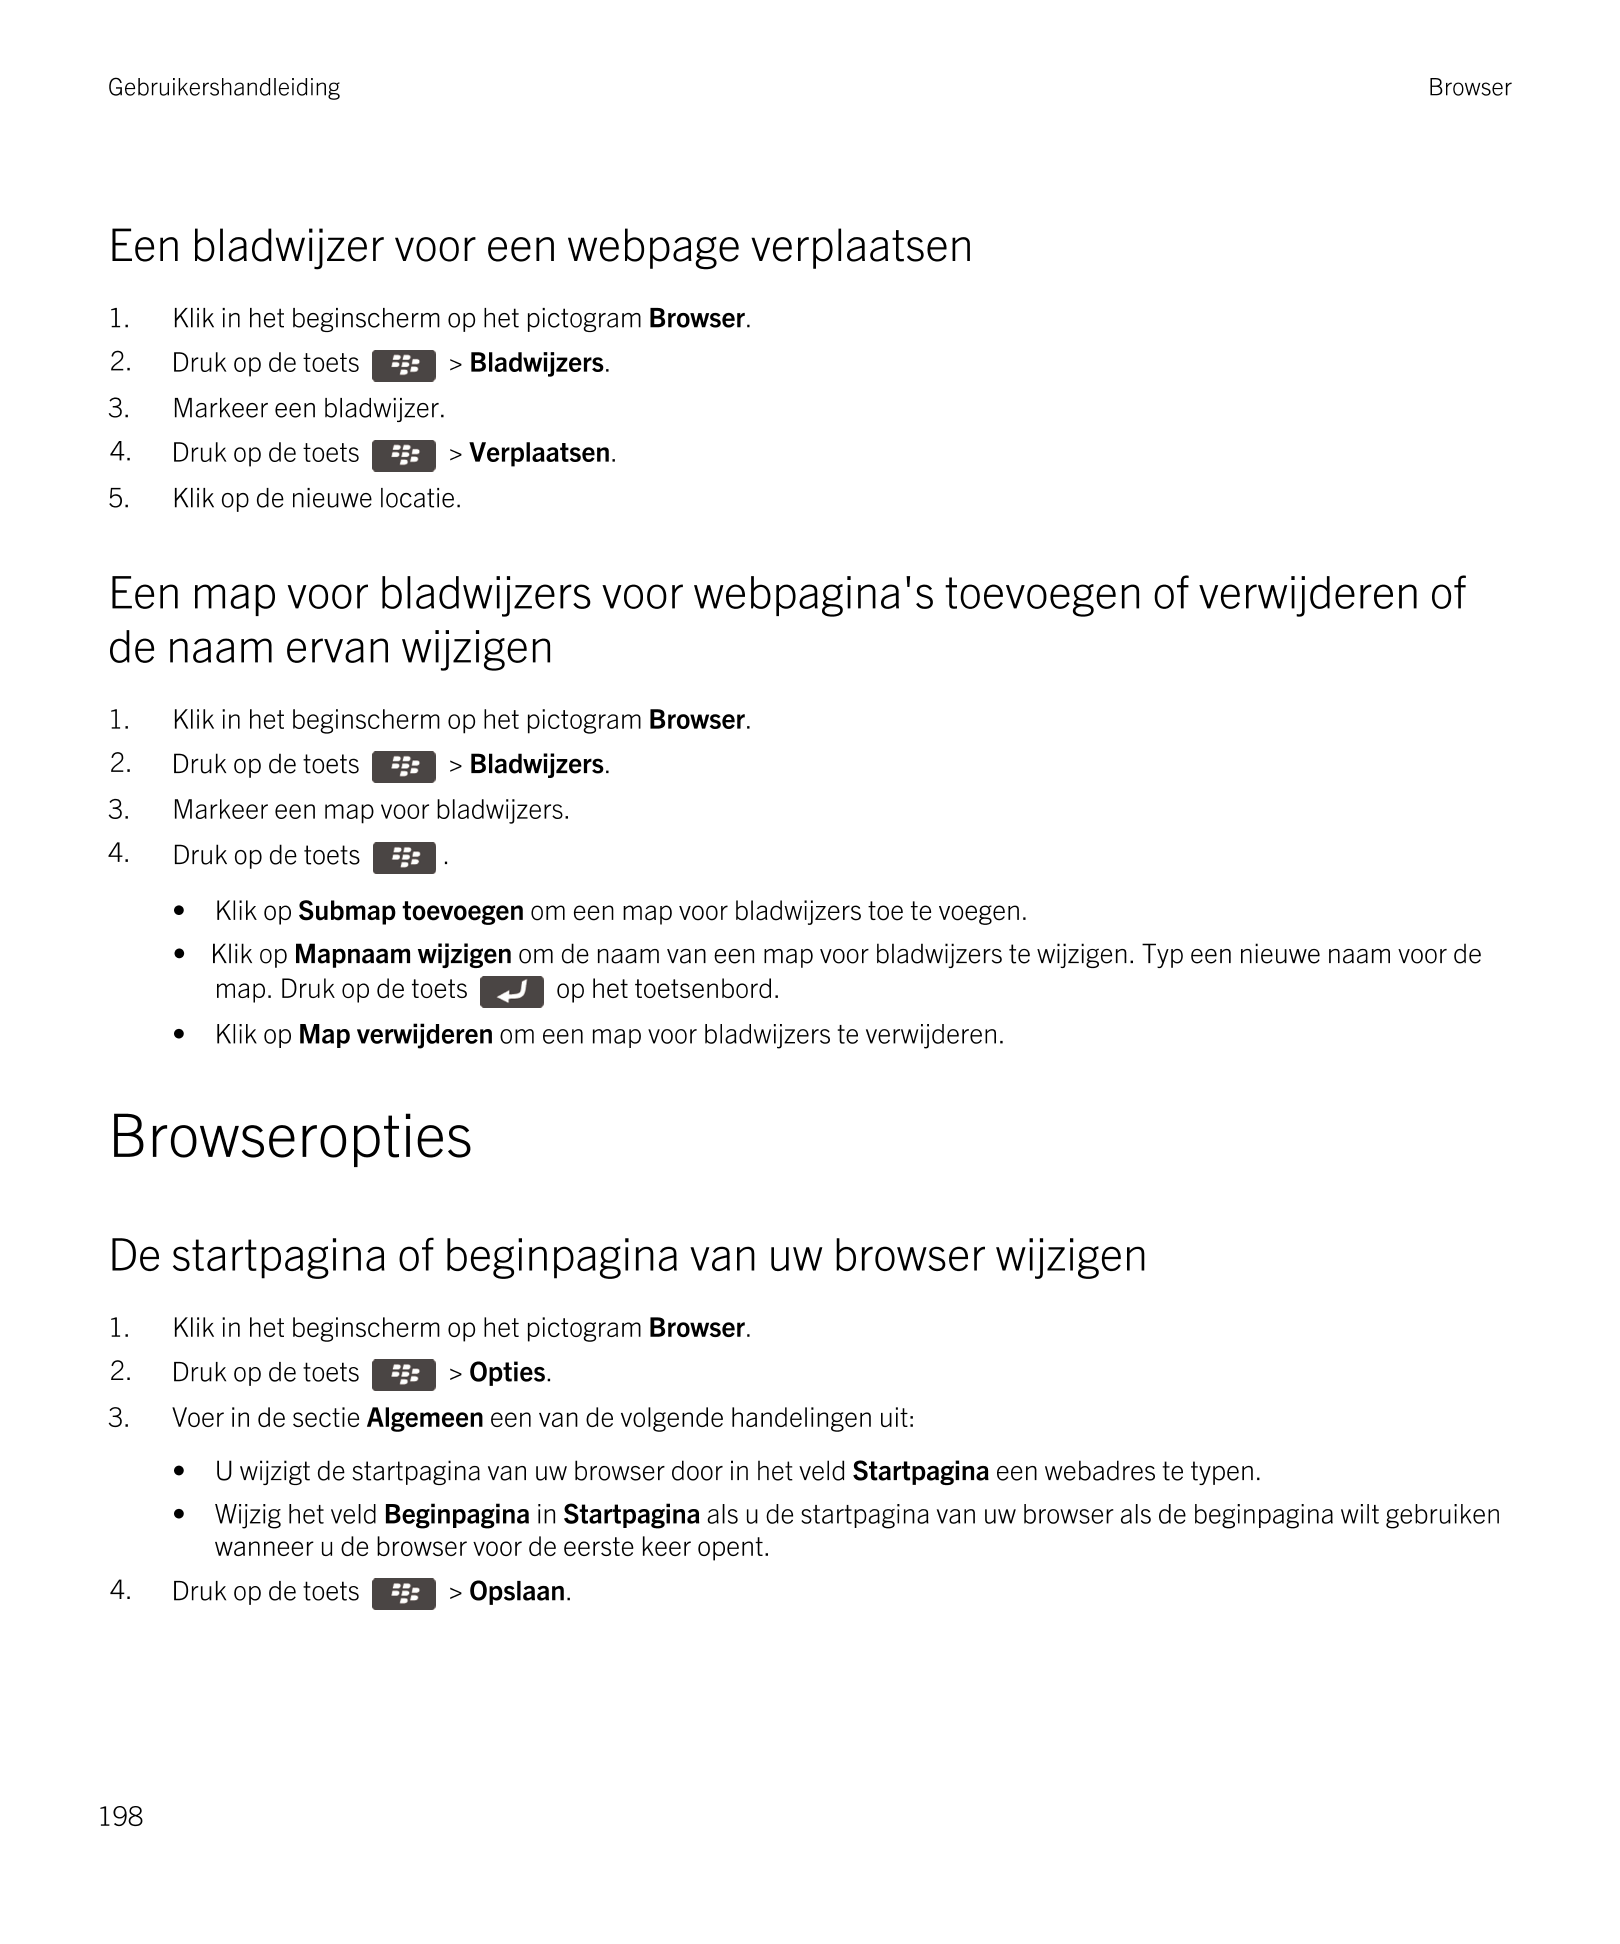 Gebruikershandleiding Browser
Een bladwijzer voor een webpage verplaatsen
1. Klik in het beginscherm op het pictogram  Browser.
